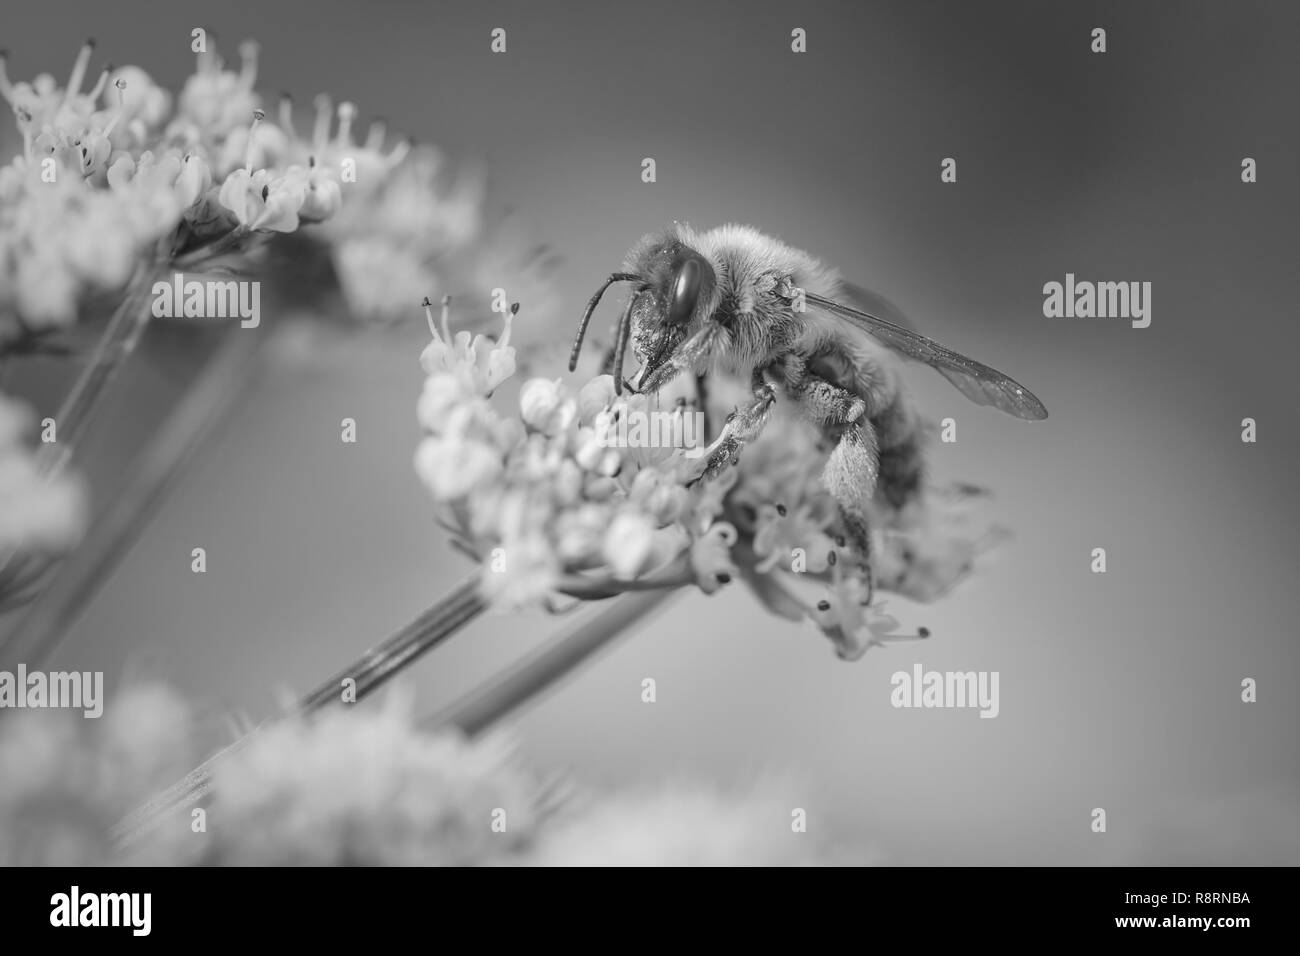 Macro d'une abeille en suçant le pollen de fleurs blanches sauvages. Converti en noir et blanc. Banque D'Images